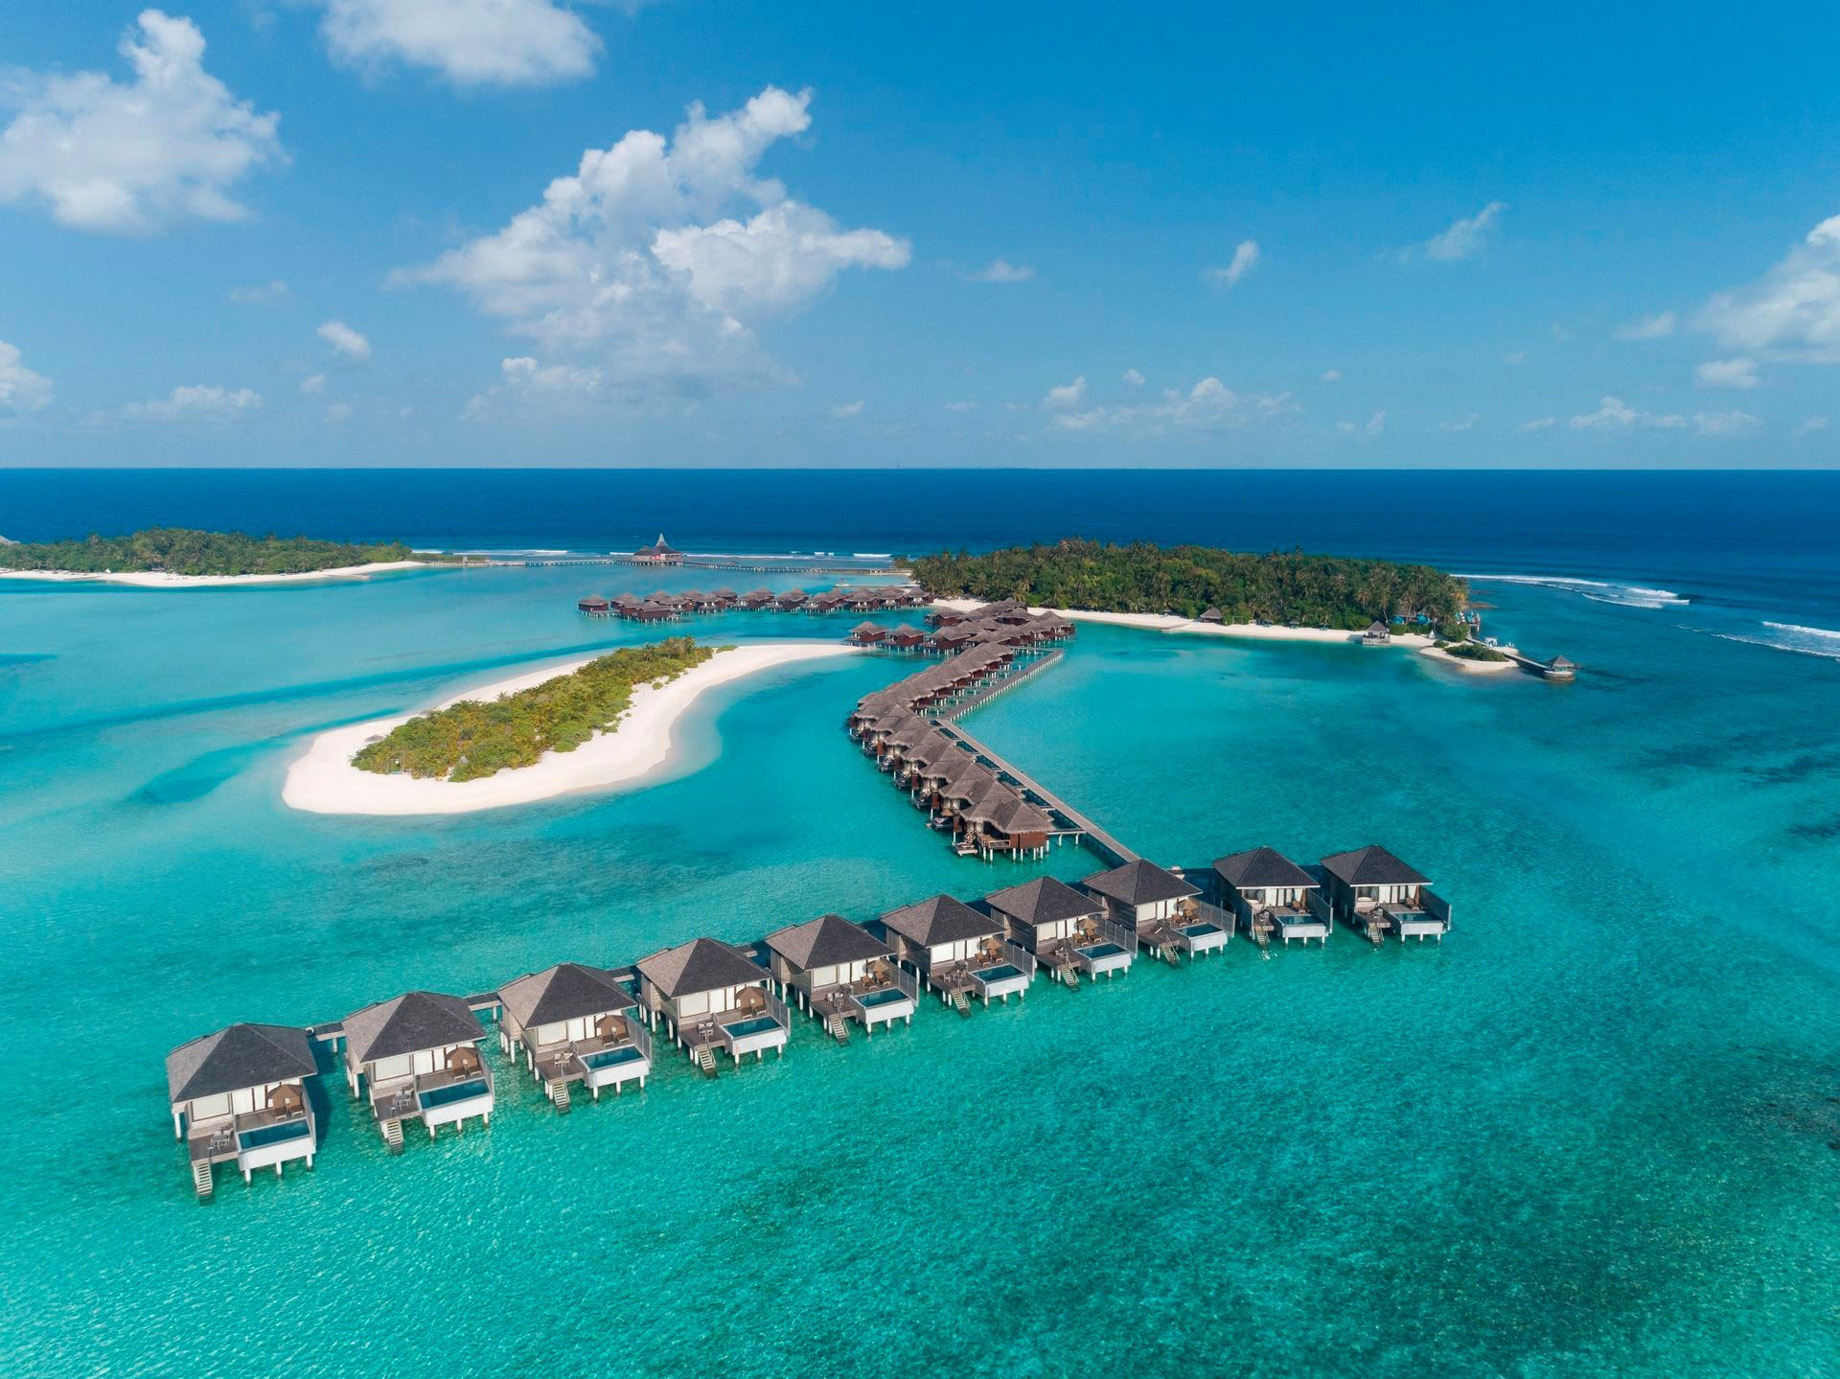 Anantara Veli Maldives Resort – South Male Atoll, Maldives – Aerial View